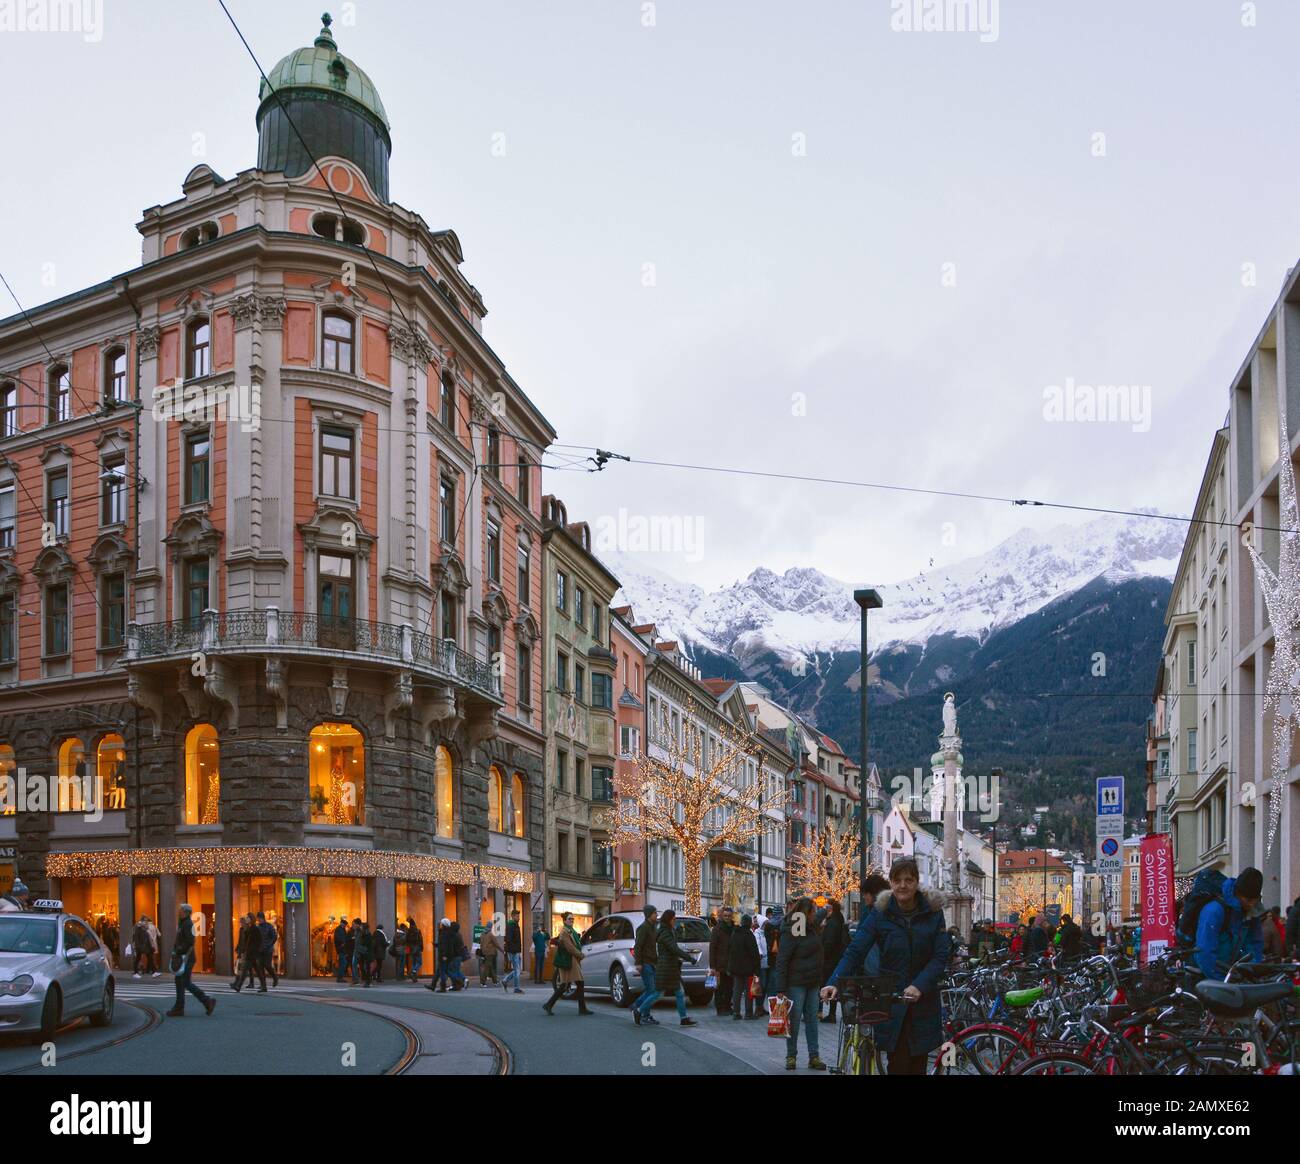 Innsbruck con decoraciones navideñas, en diciembre de 2018 Foto de stock